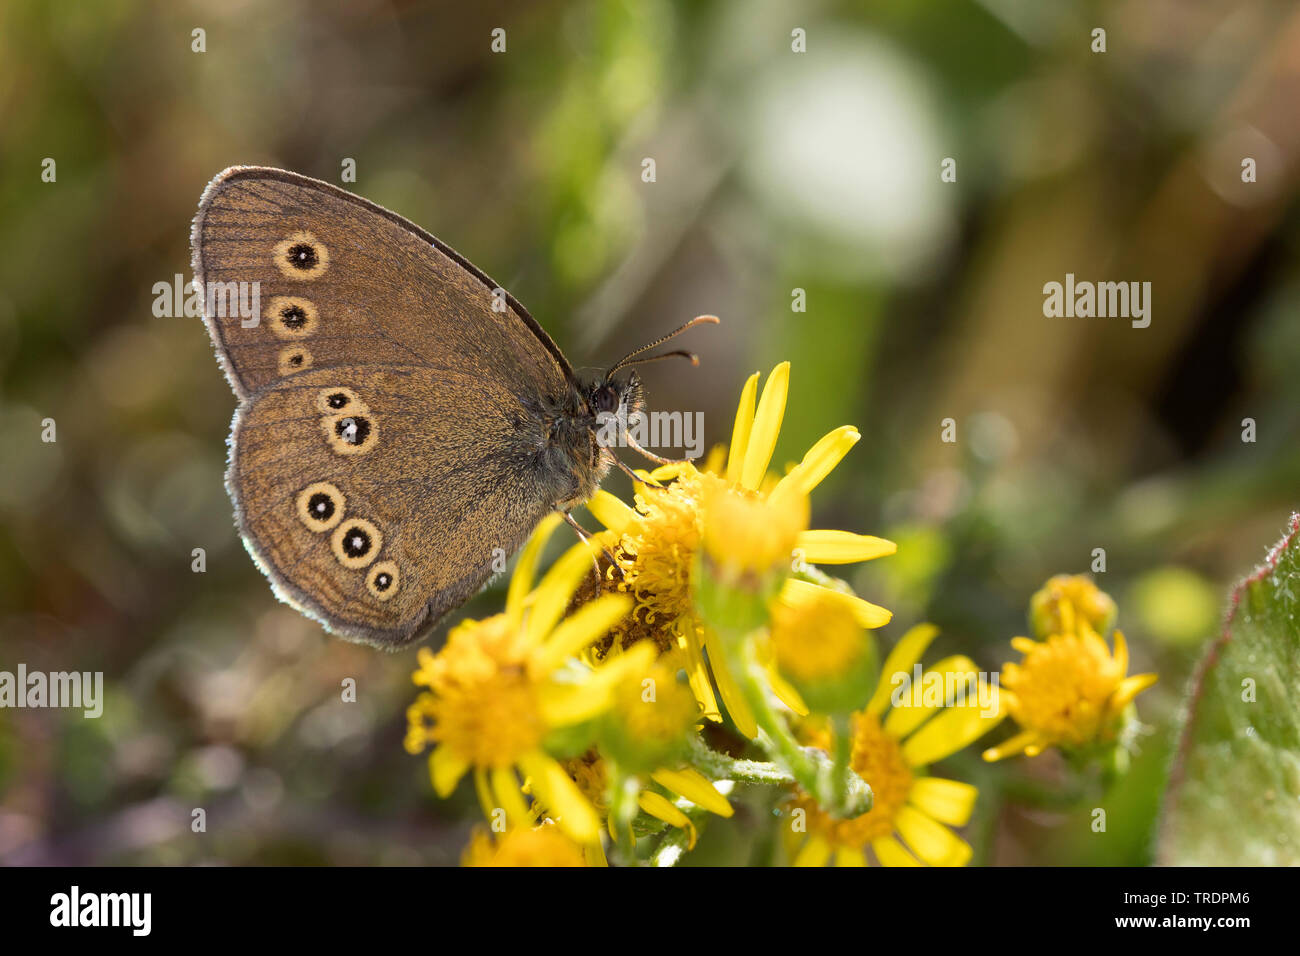 (Aphantopus hyperantus) Satyre fauve, à la recherche de nectar sur un composite, side view, Allemagne Banque D'Images